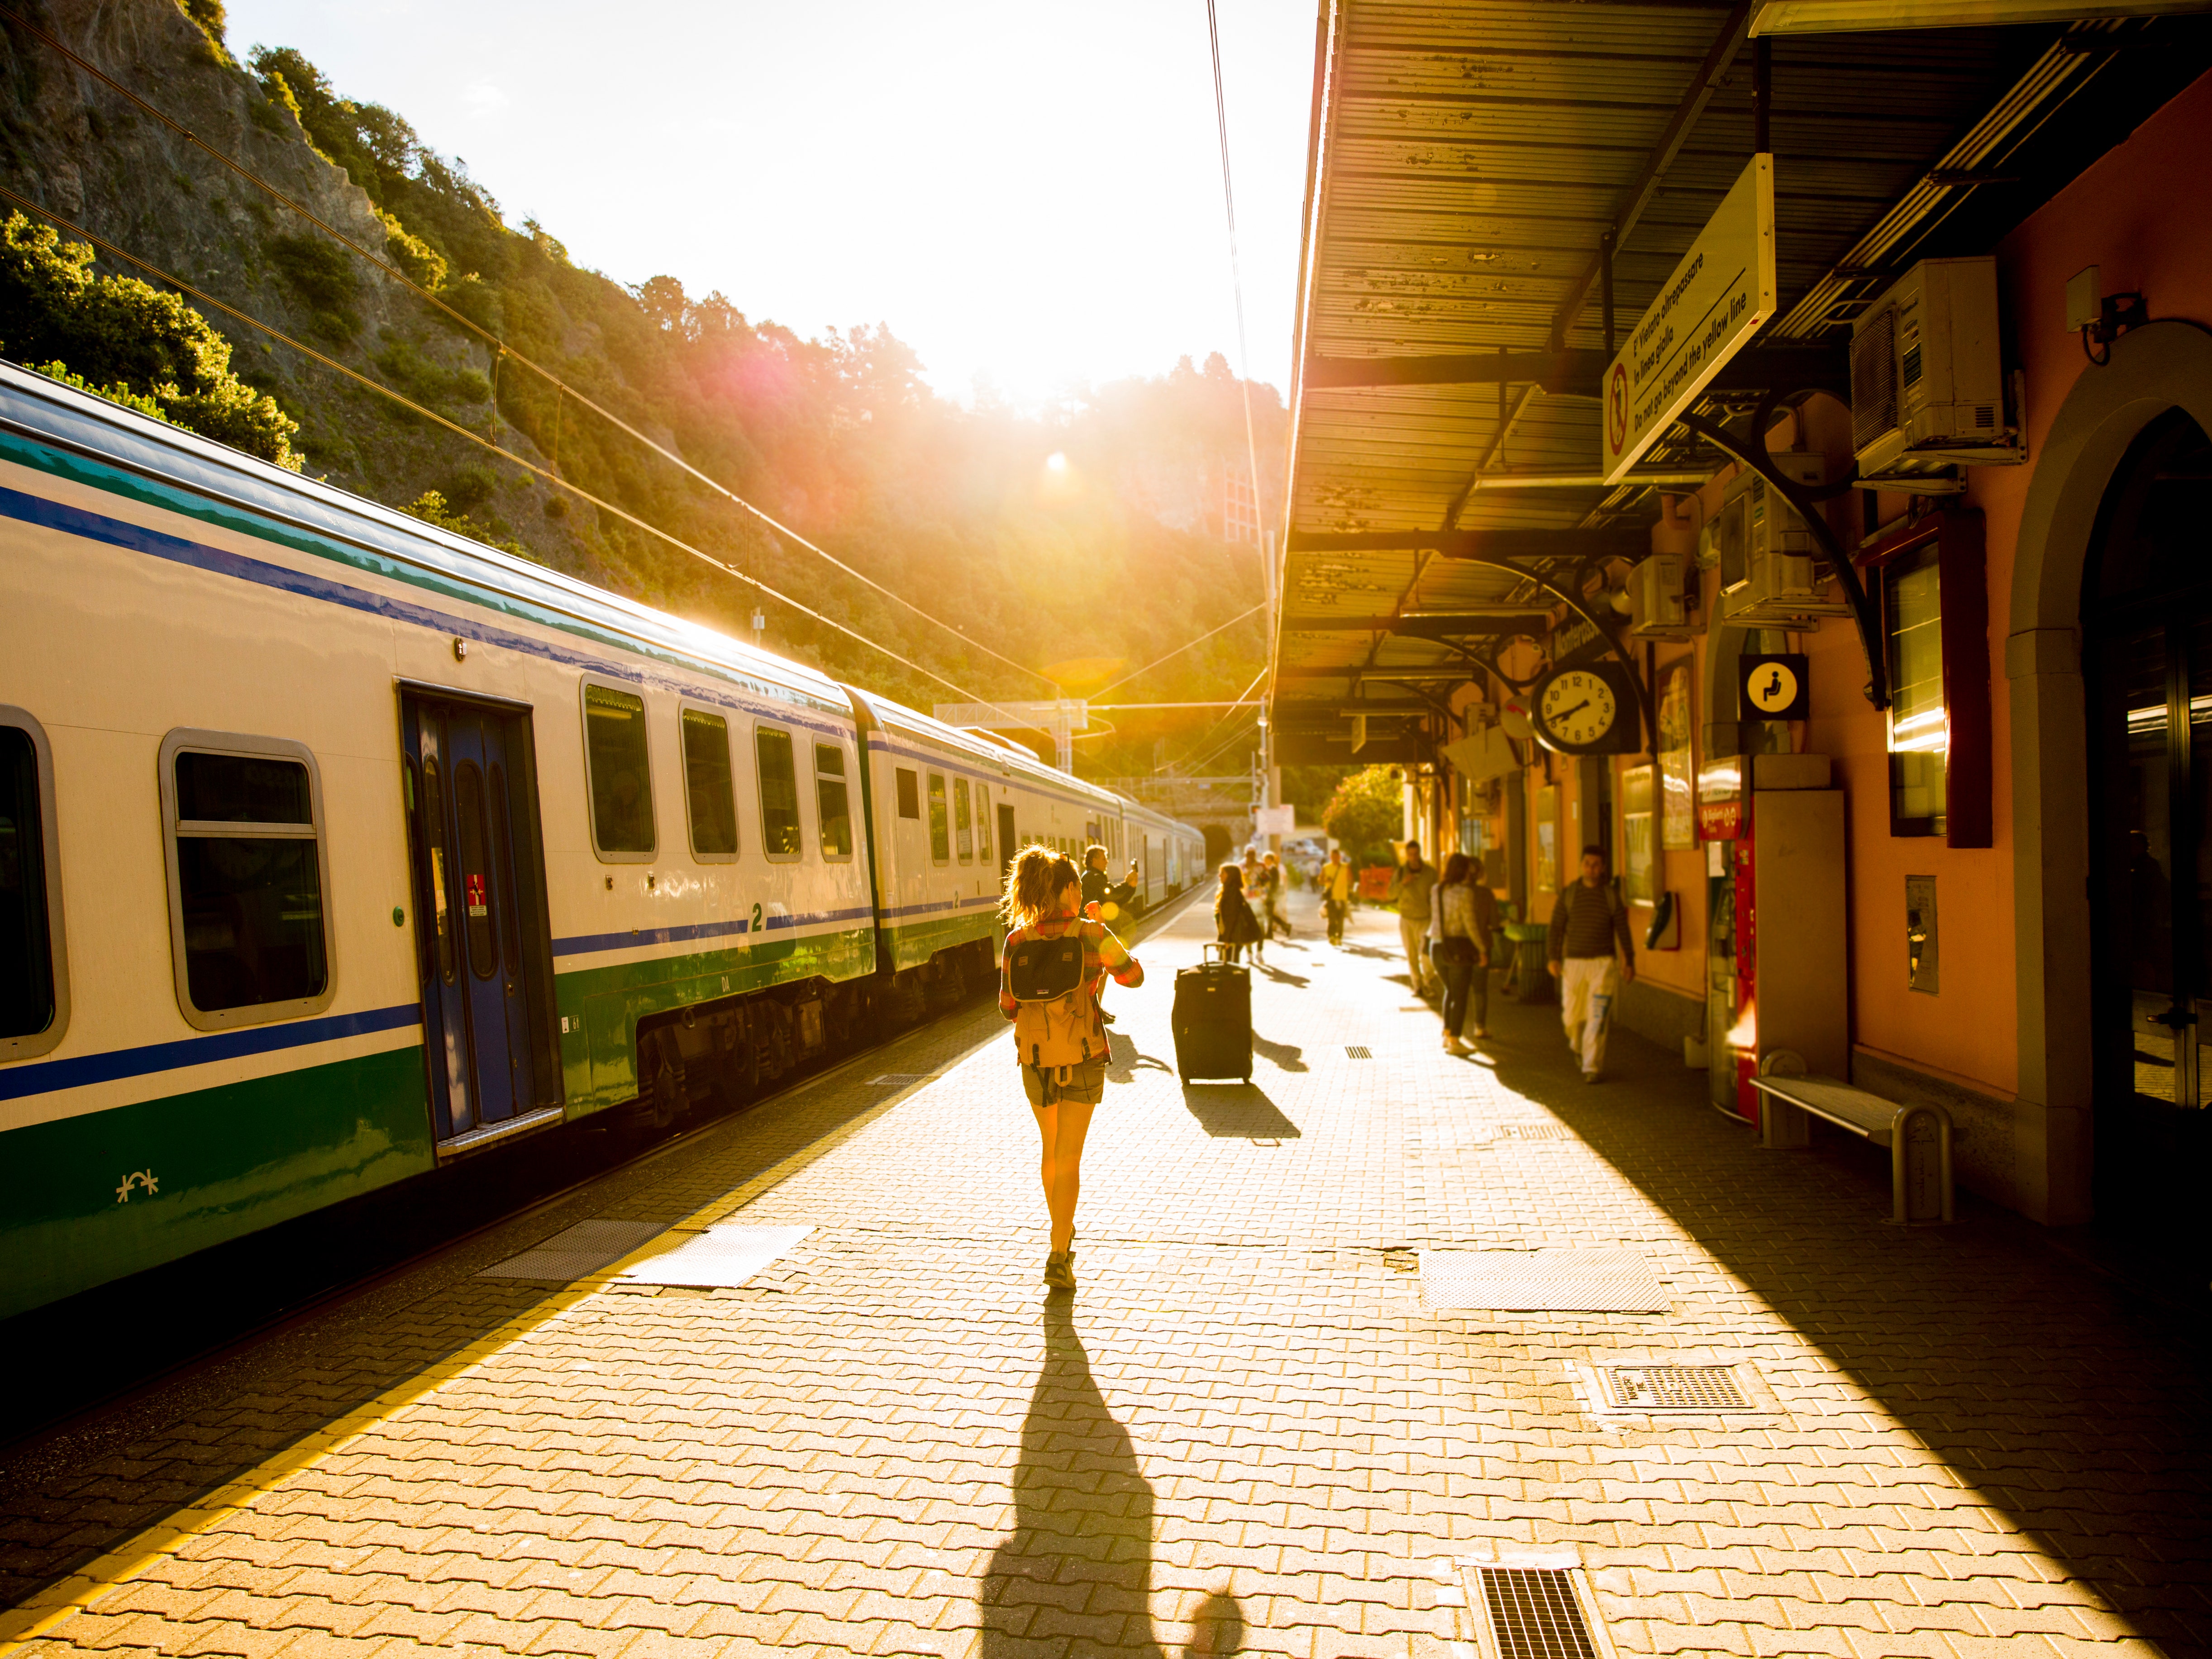 29 ユーロの鉄道チケットを使って 3 日間でイタリアを観光する方法